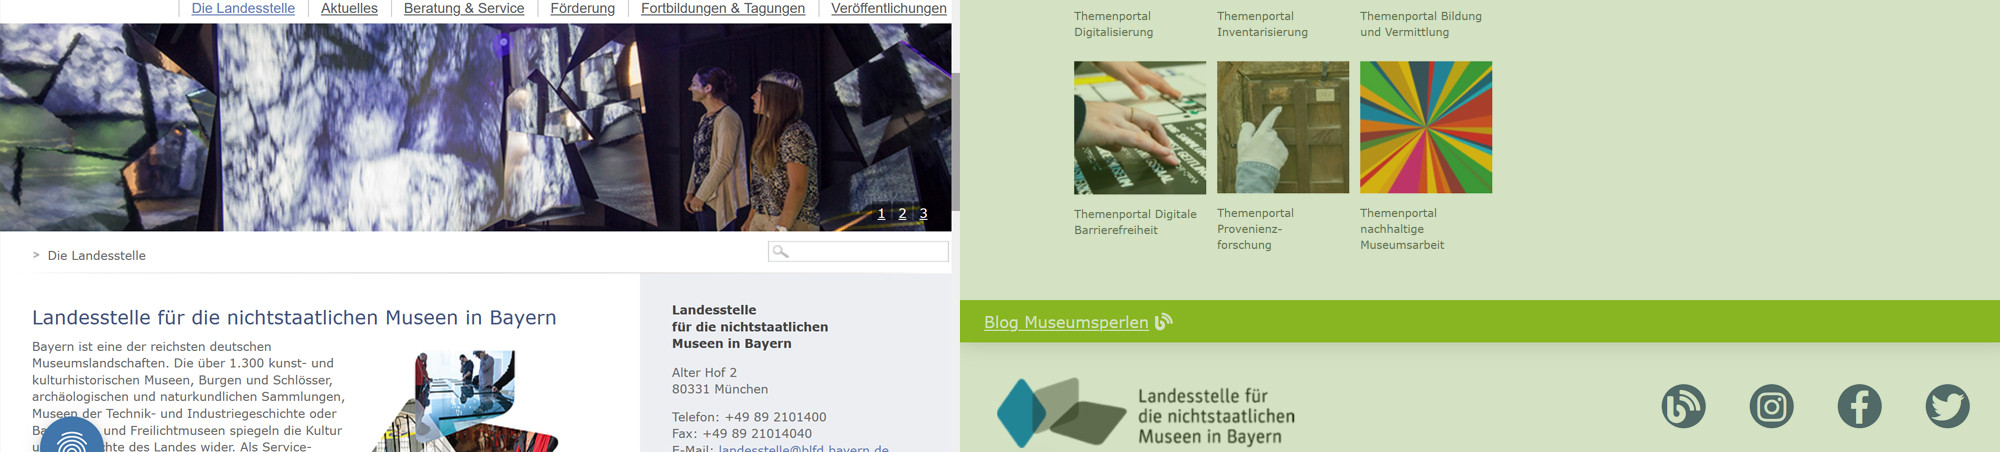 Landesstelle für nichtstaatliche Museen in Bayern, Screenshots der Homepage